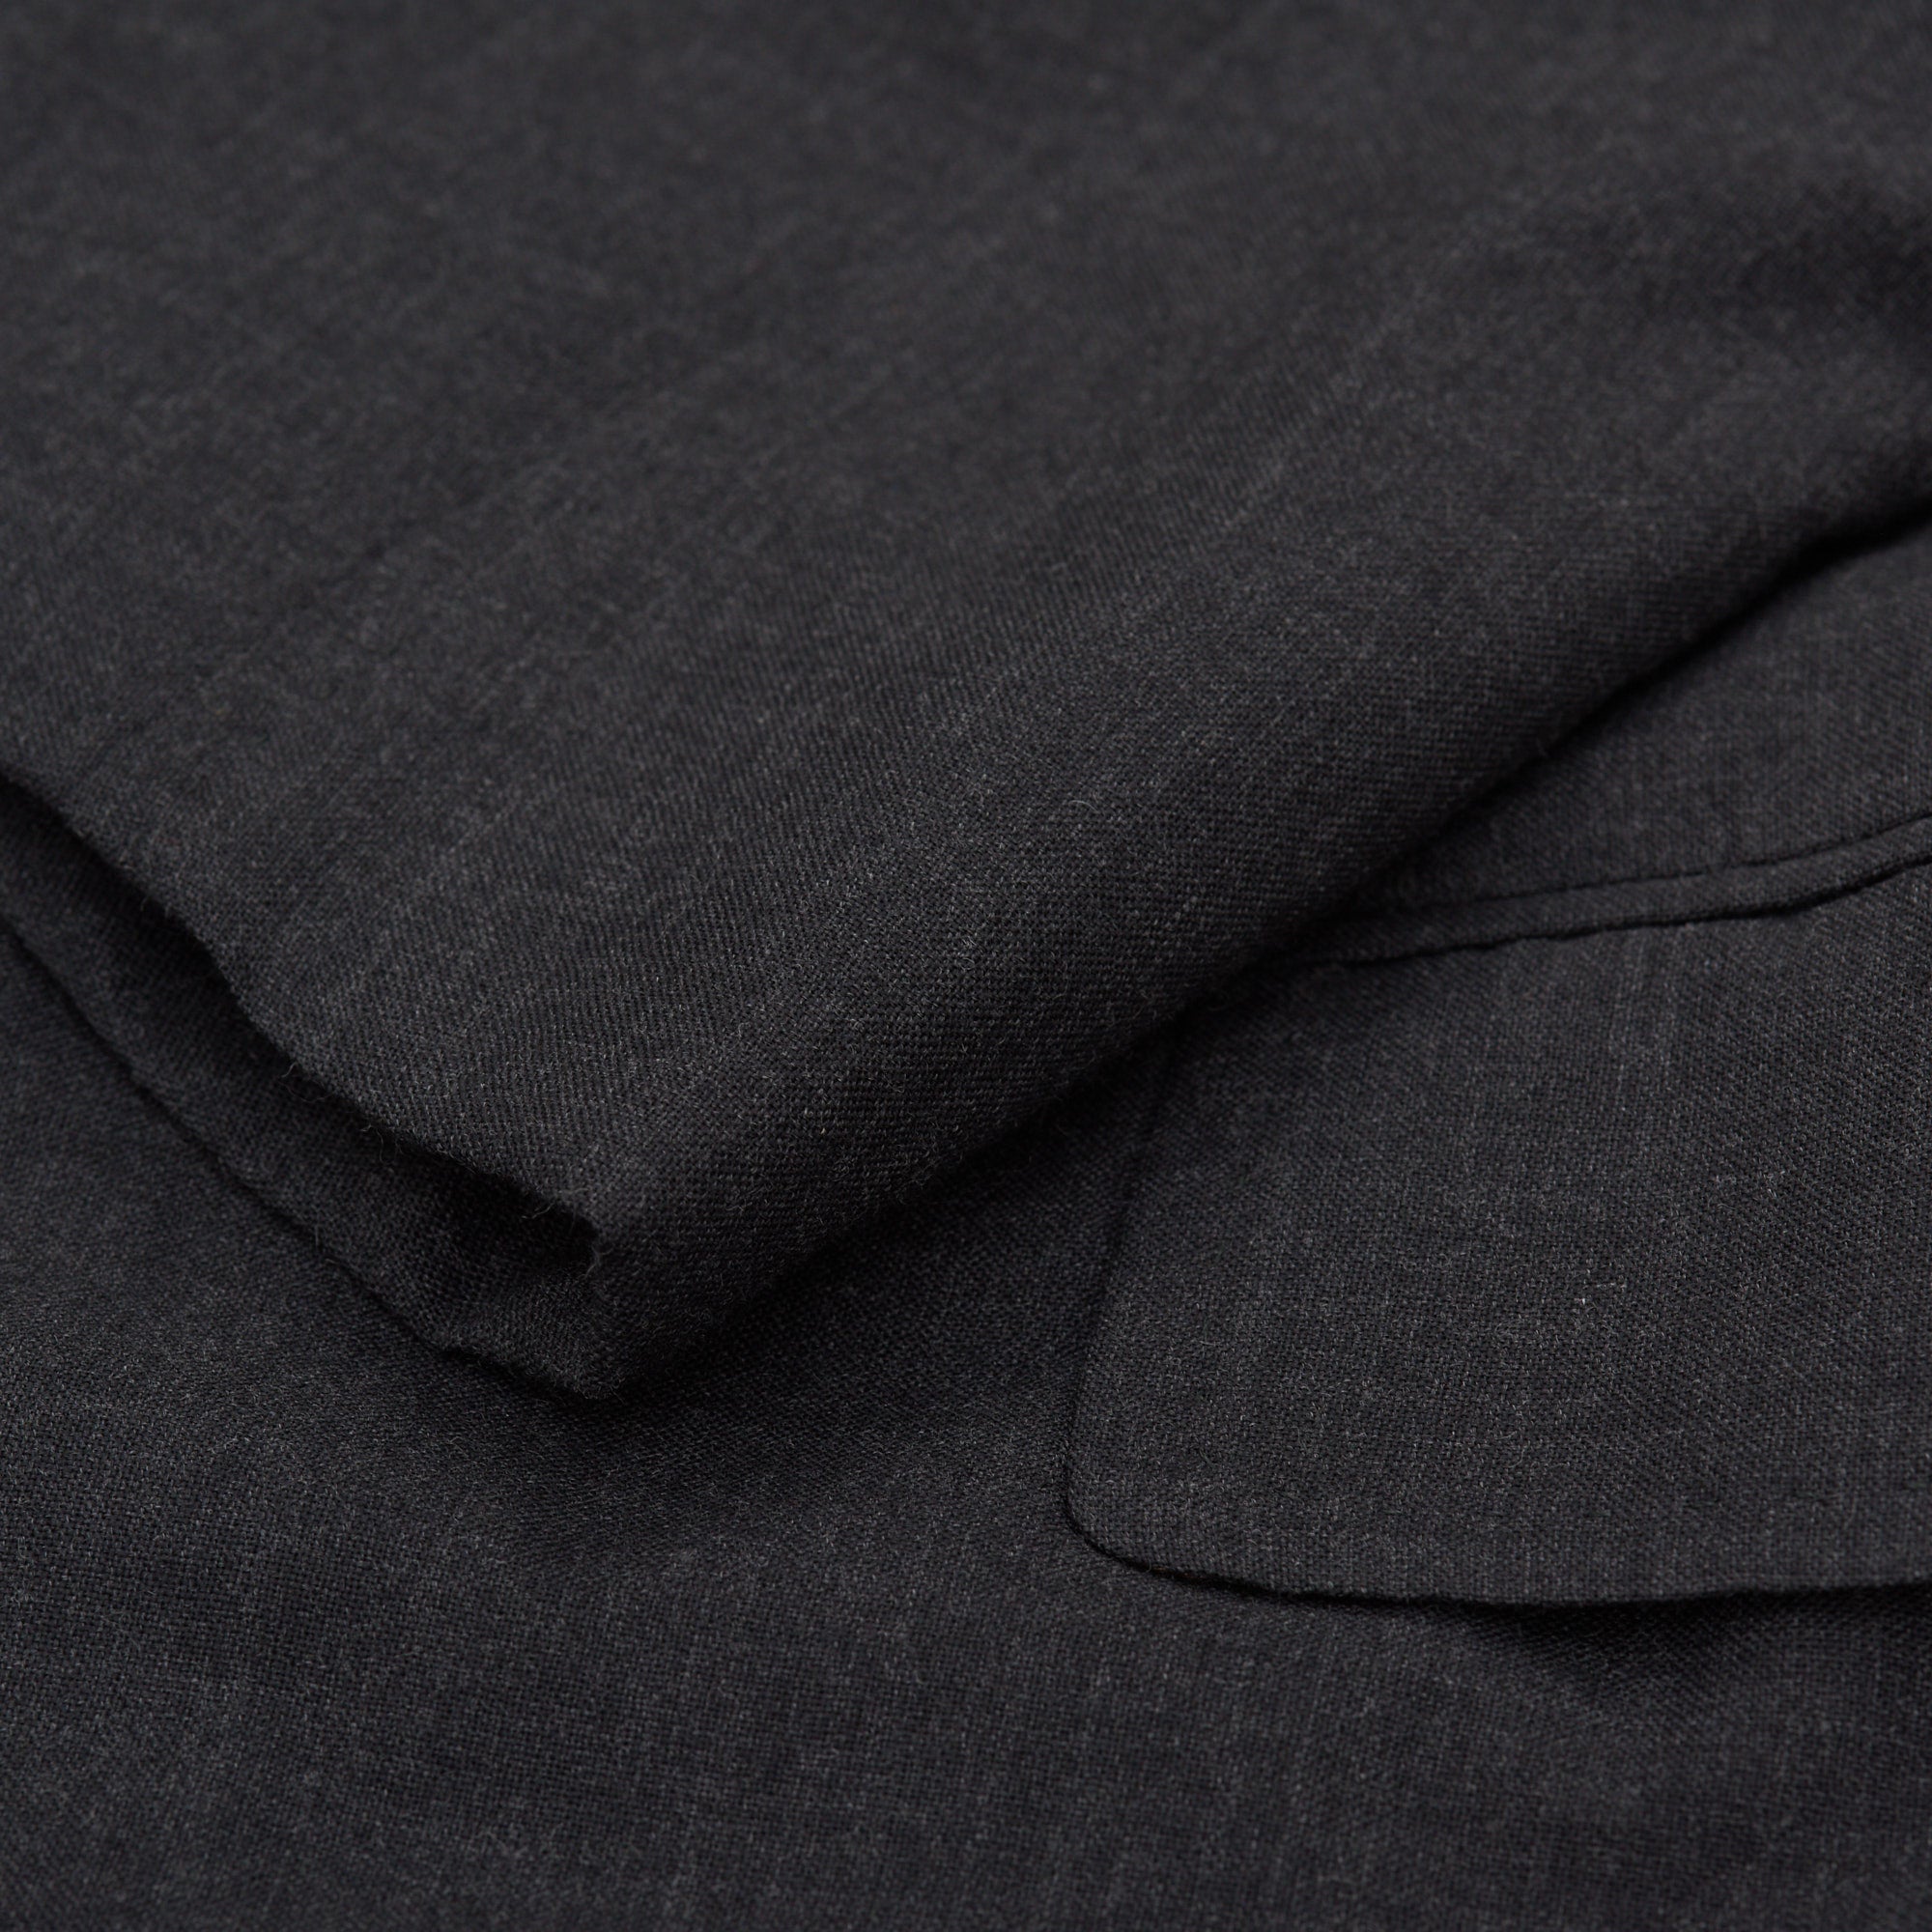 SARTORIA CESARE ATTOLINI Napoli Handmade Gray Wool Coat EU 48 NEW US 38 CESARE ATTOLINI